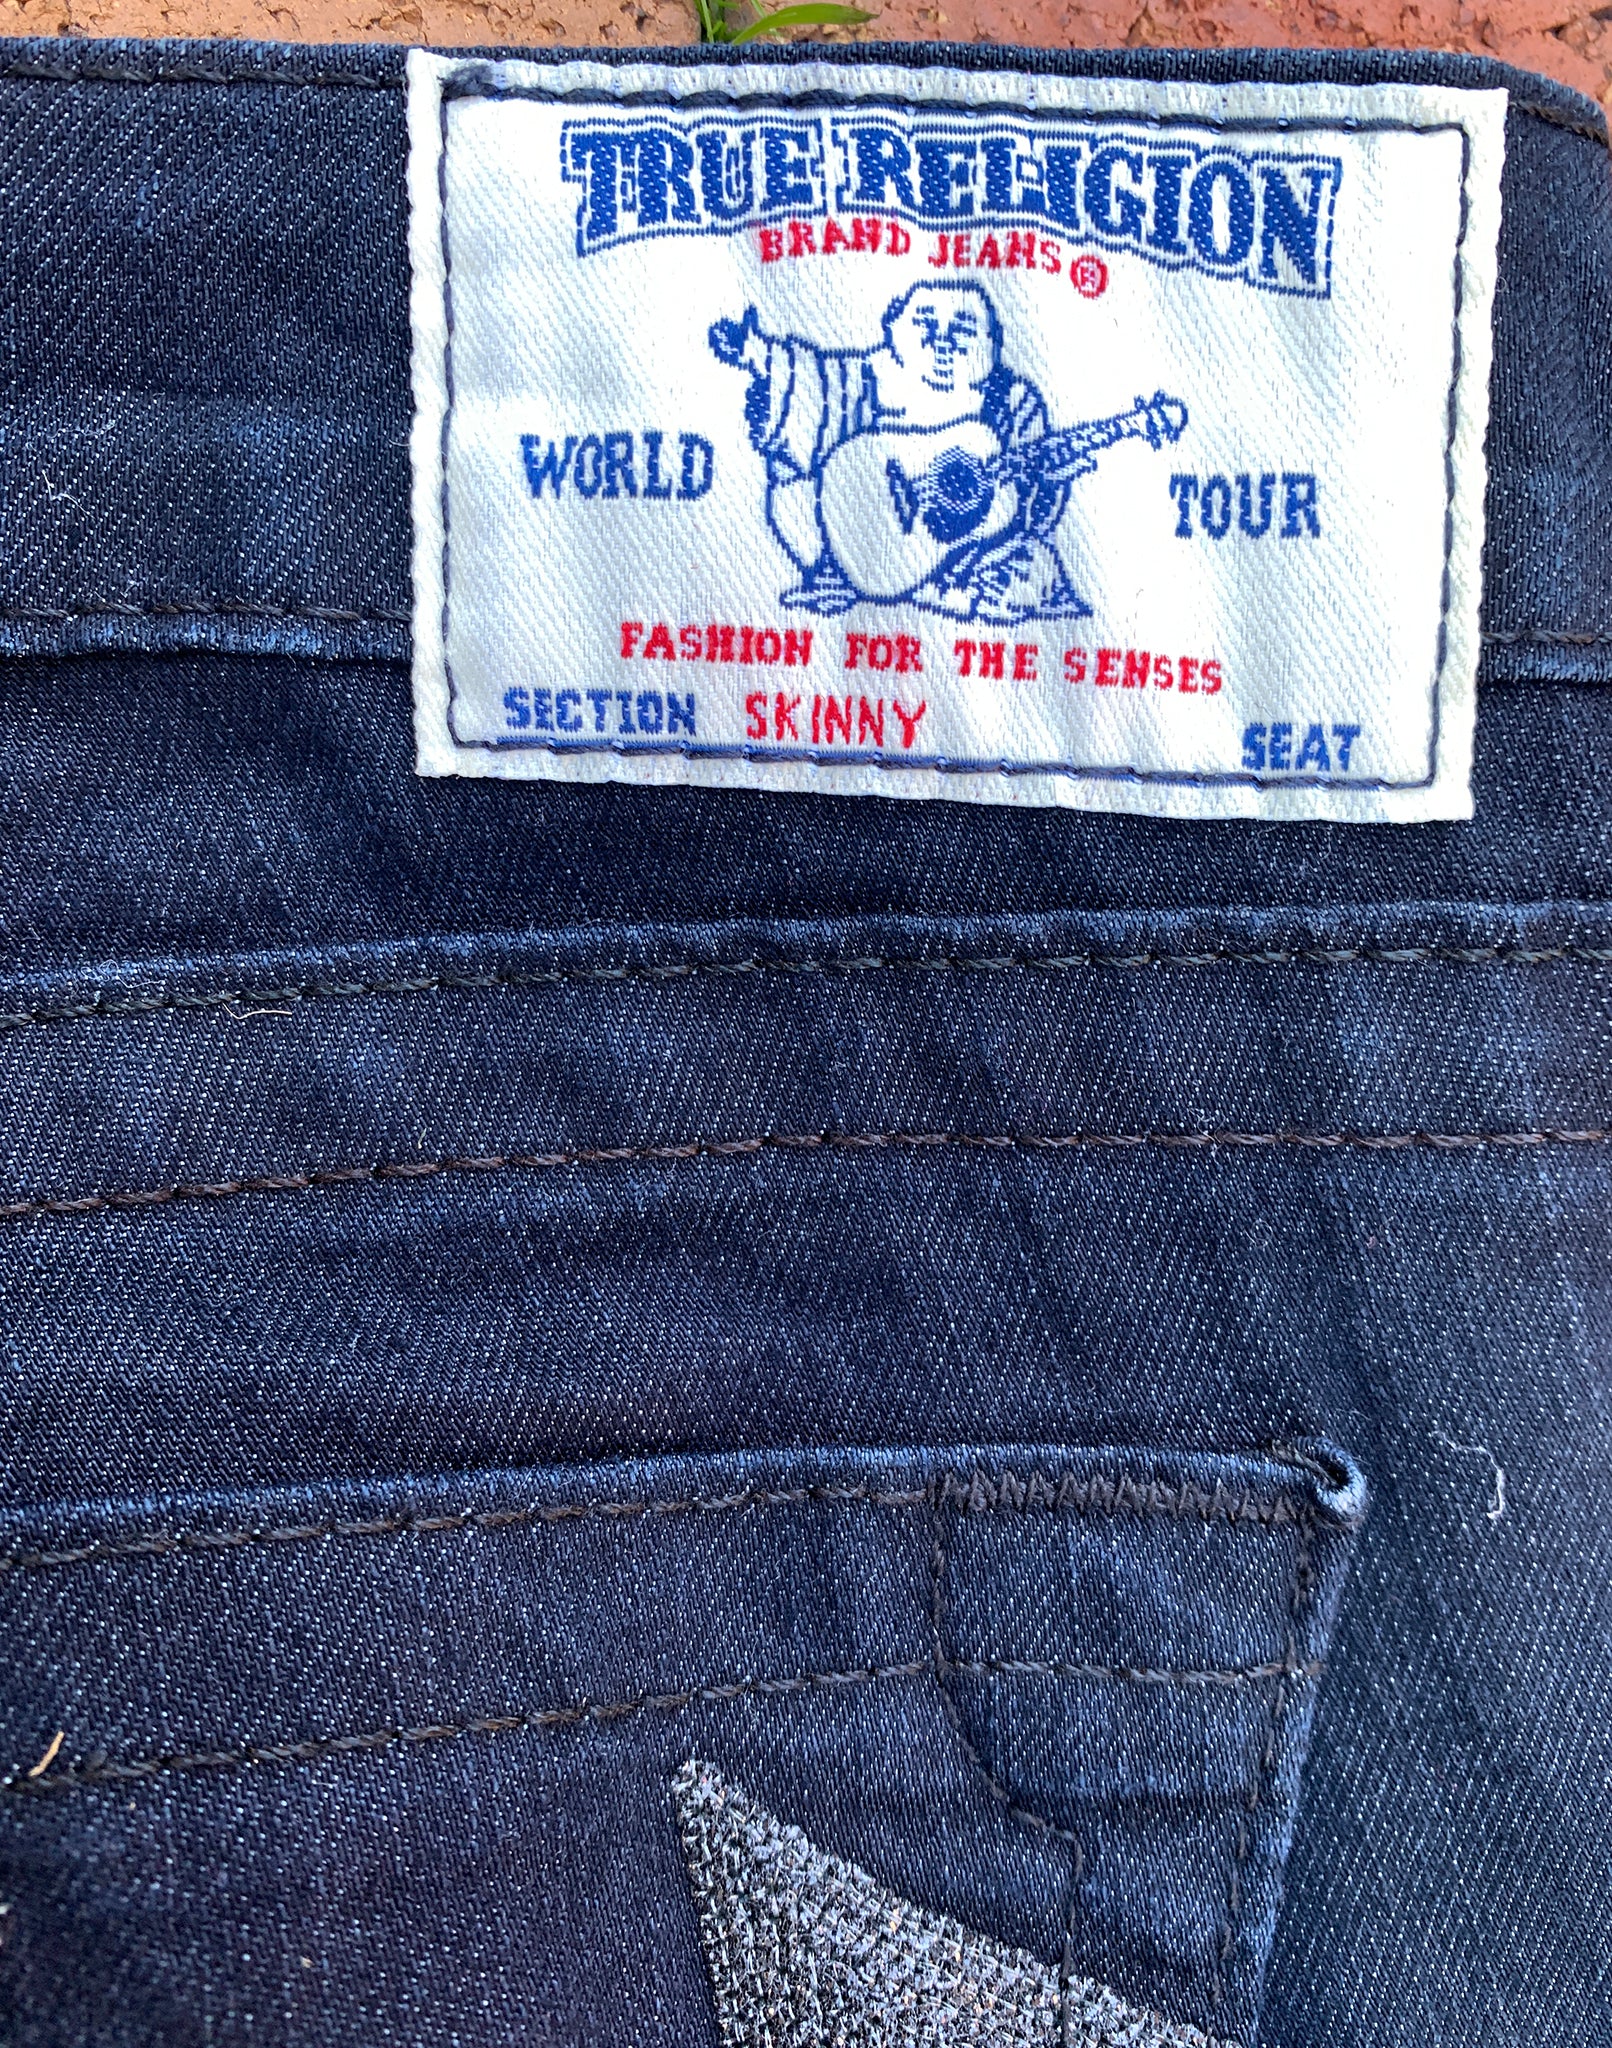 True Religion Dark Skinny Jeans Size 26 XS/S Y2K